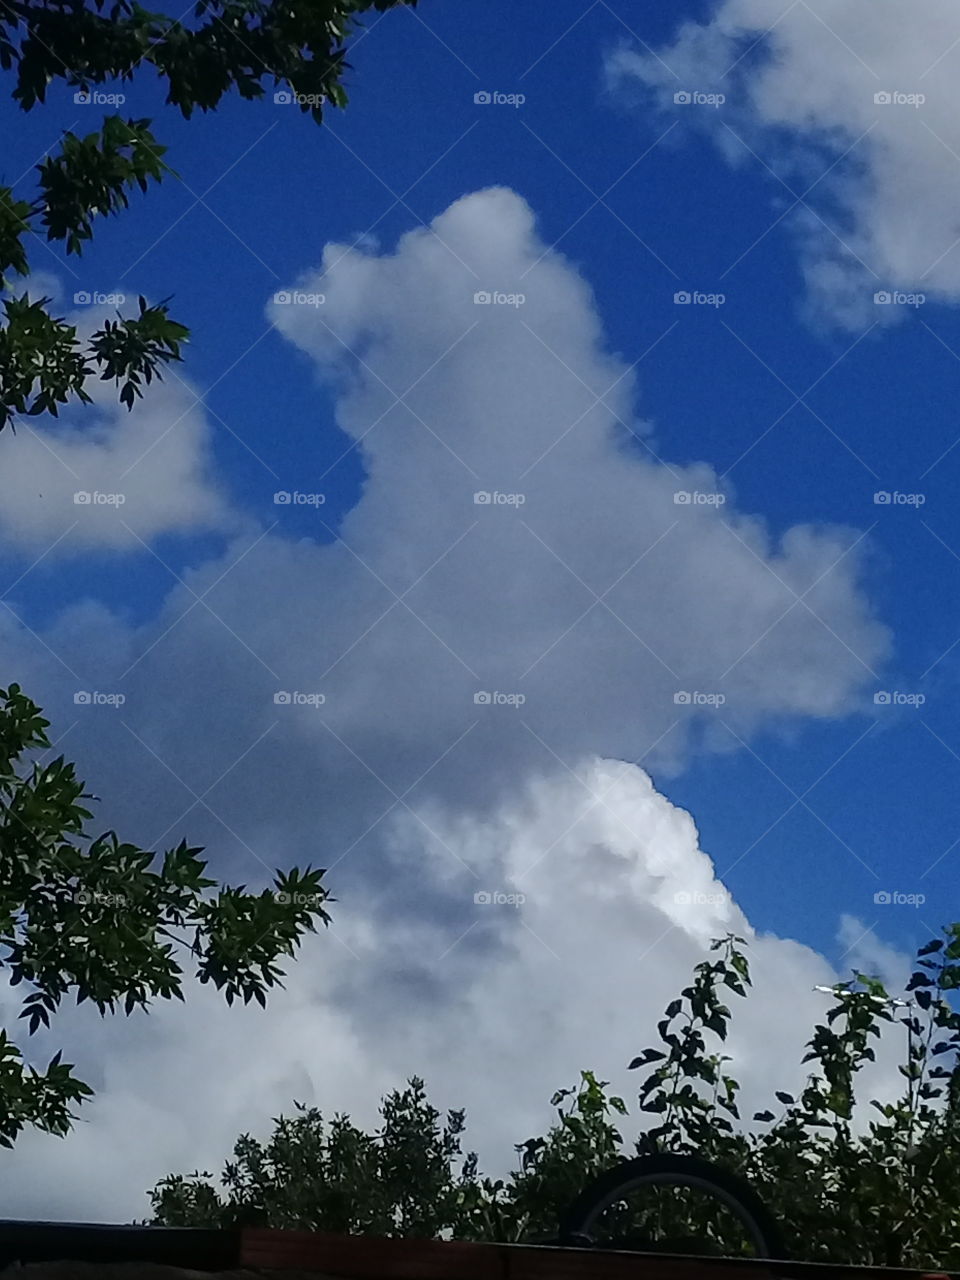 imagen de un cielo de verano con nubes blancas asomando entre las copas de árboles.